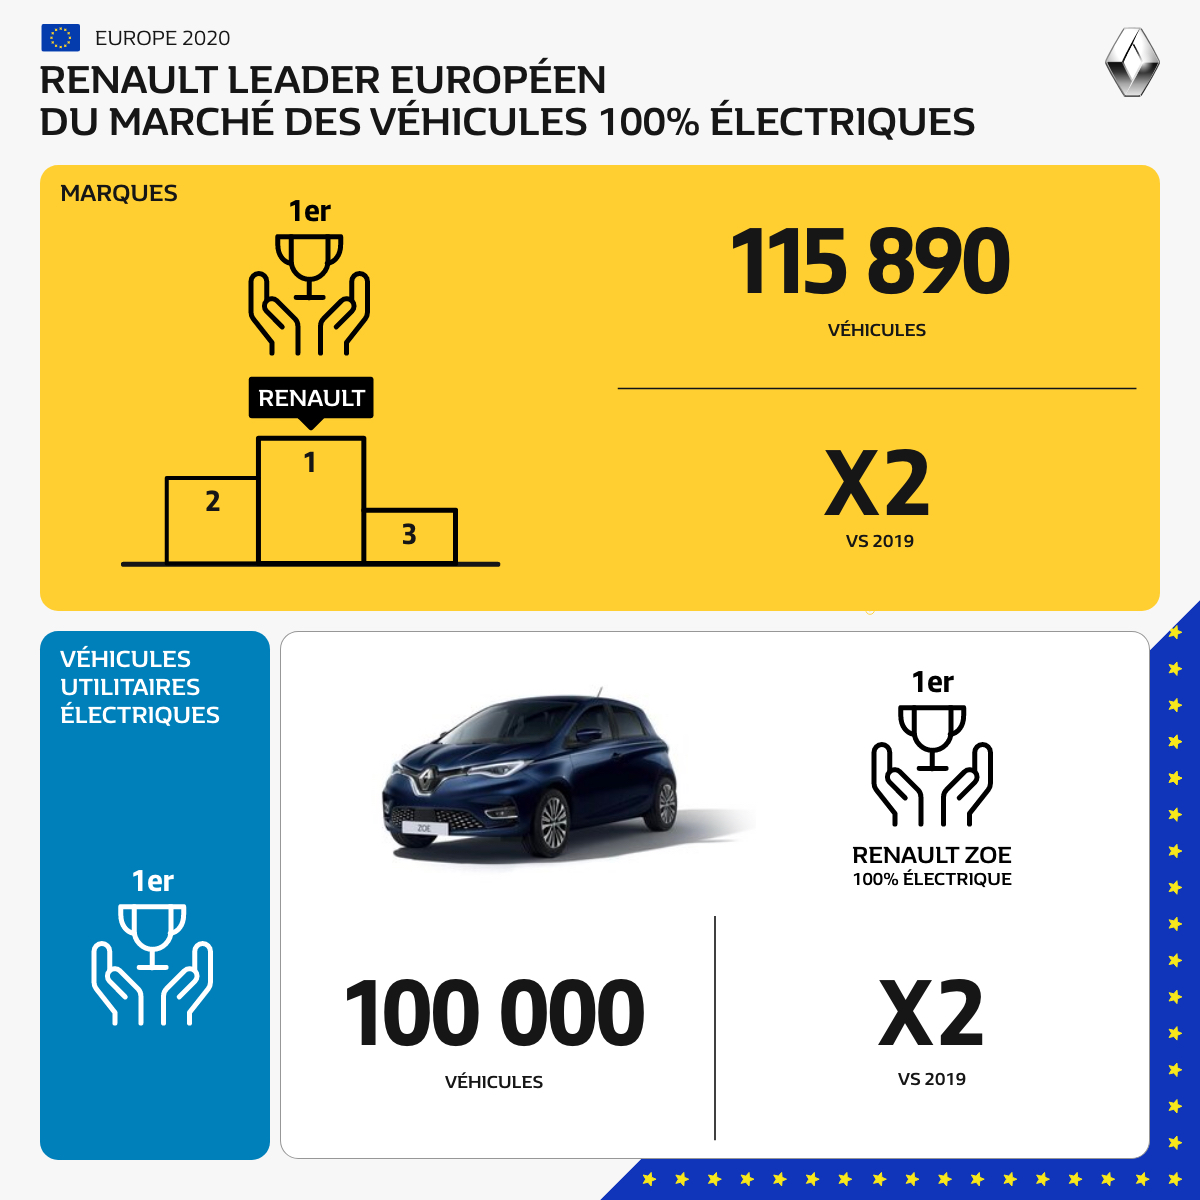 Renault, leader de la mobilité électrique en Europe. Fiers 
 #RenaultZOE #Véhicu...